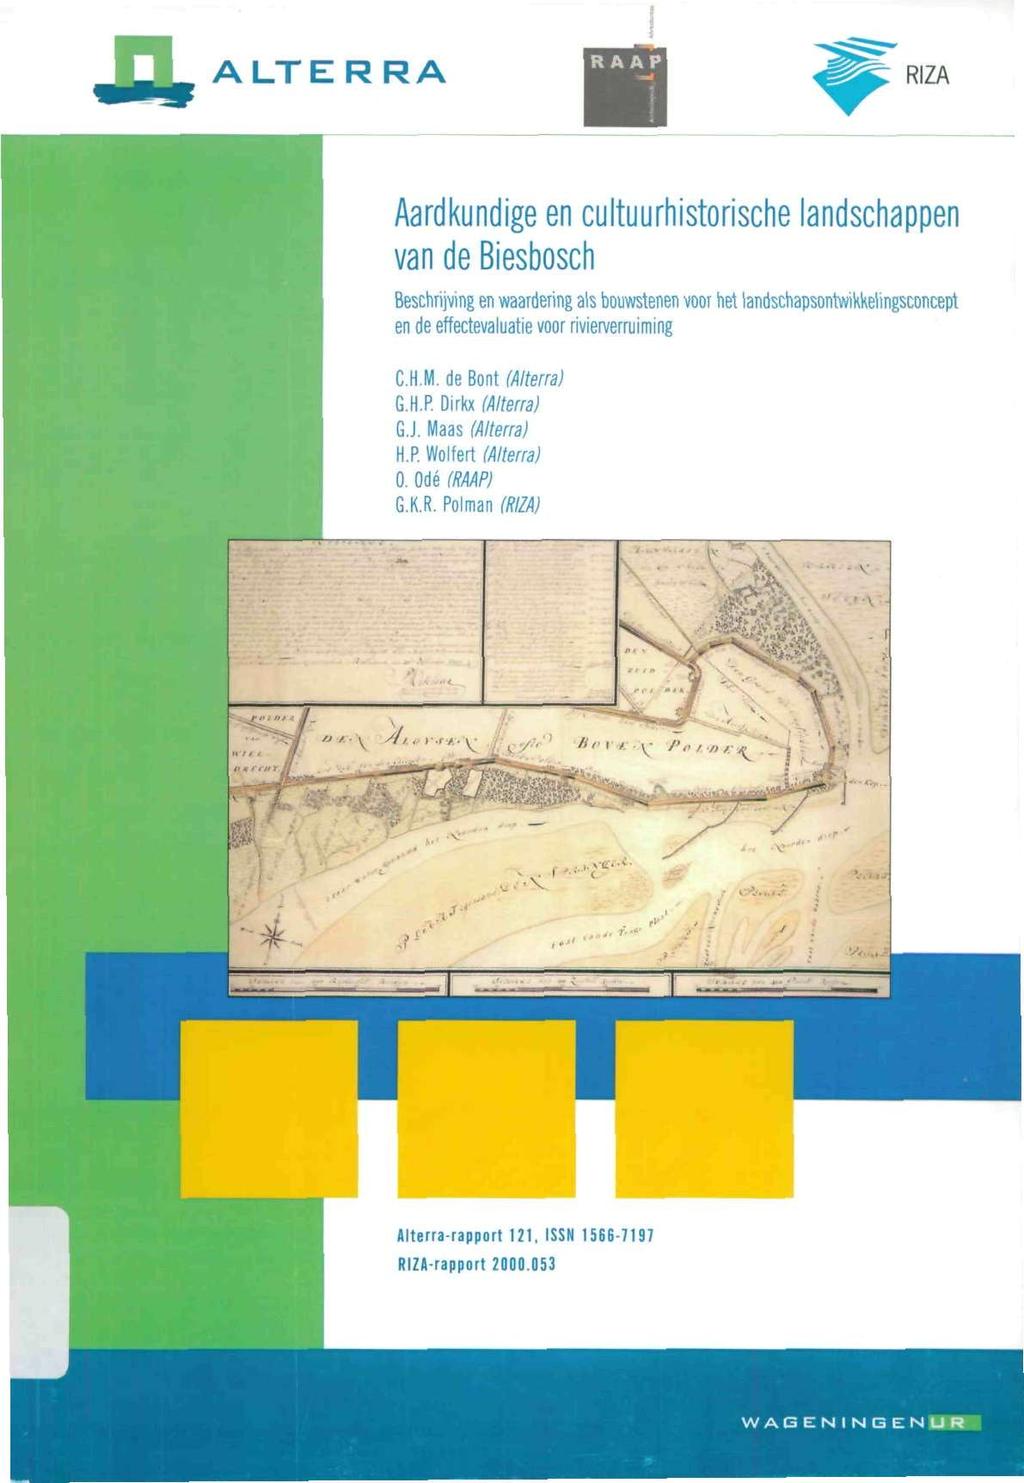 A ALTERRA RIZA Aardkundige en cultuurhistorische landschappen van de Biesbosch Beschrijving en waardering als bouwstenen voor net landschapsontwikkelingsconcept en de effectevaluatie voor